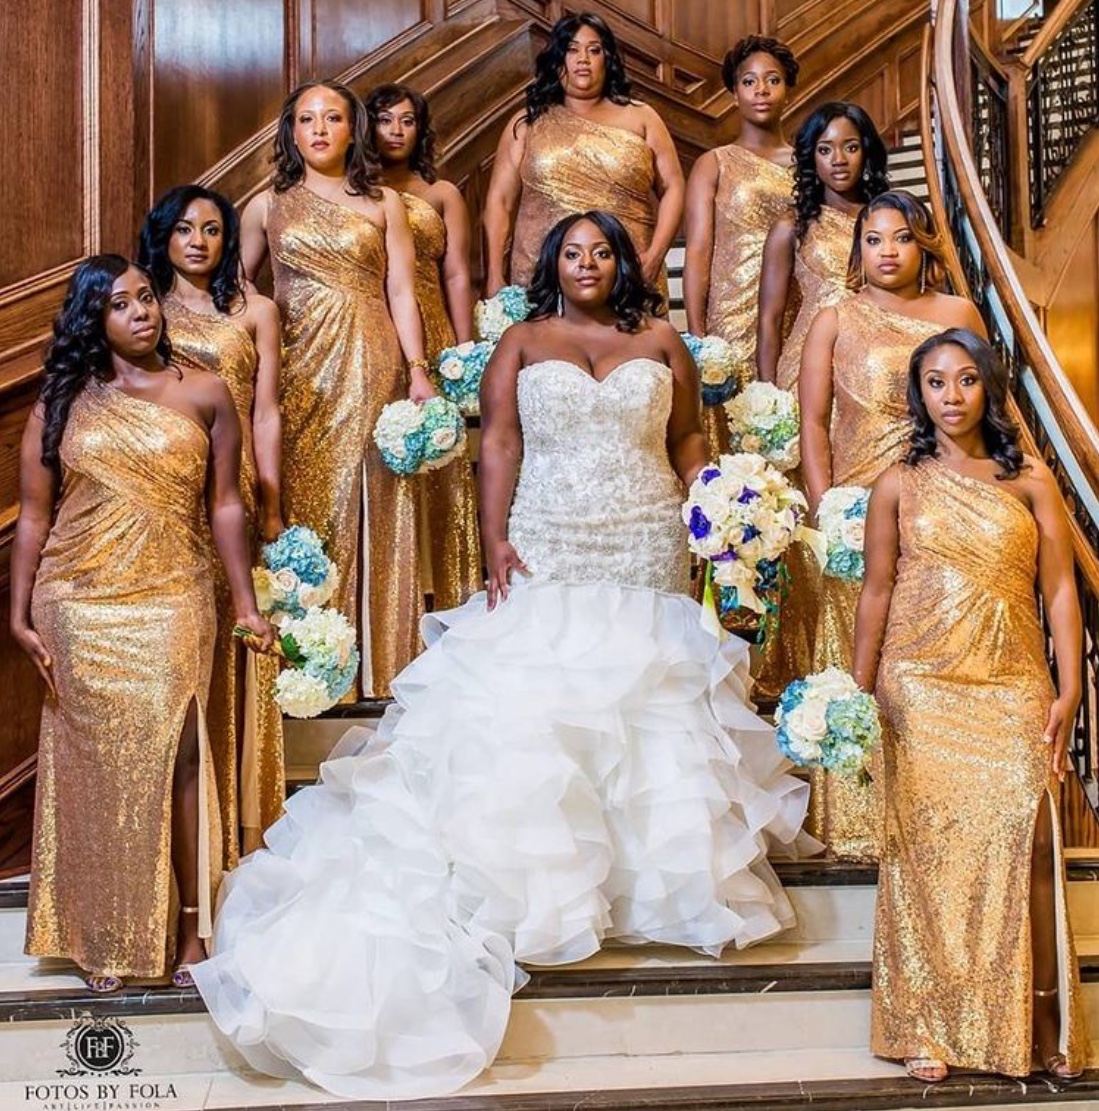 gold bridesmaid dress